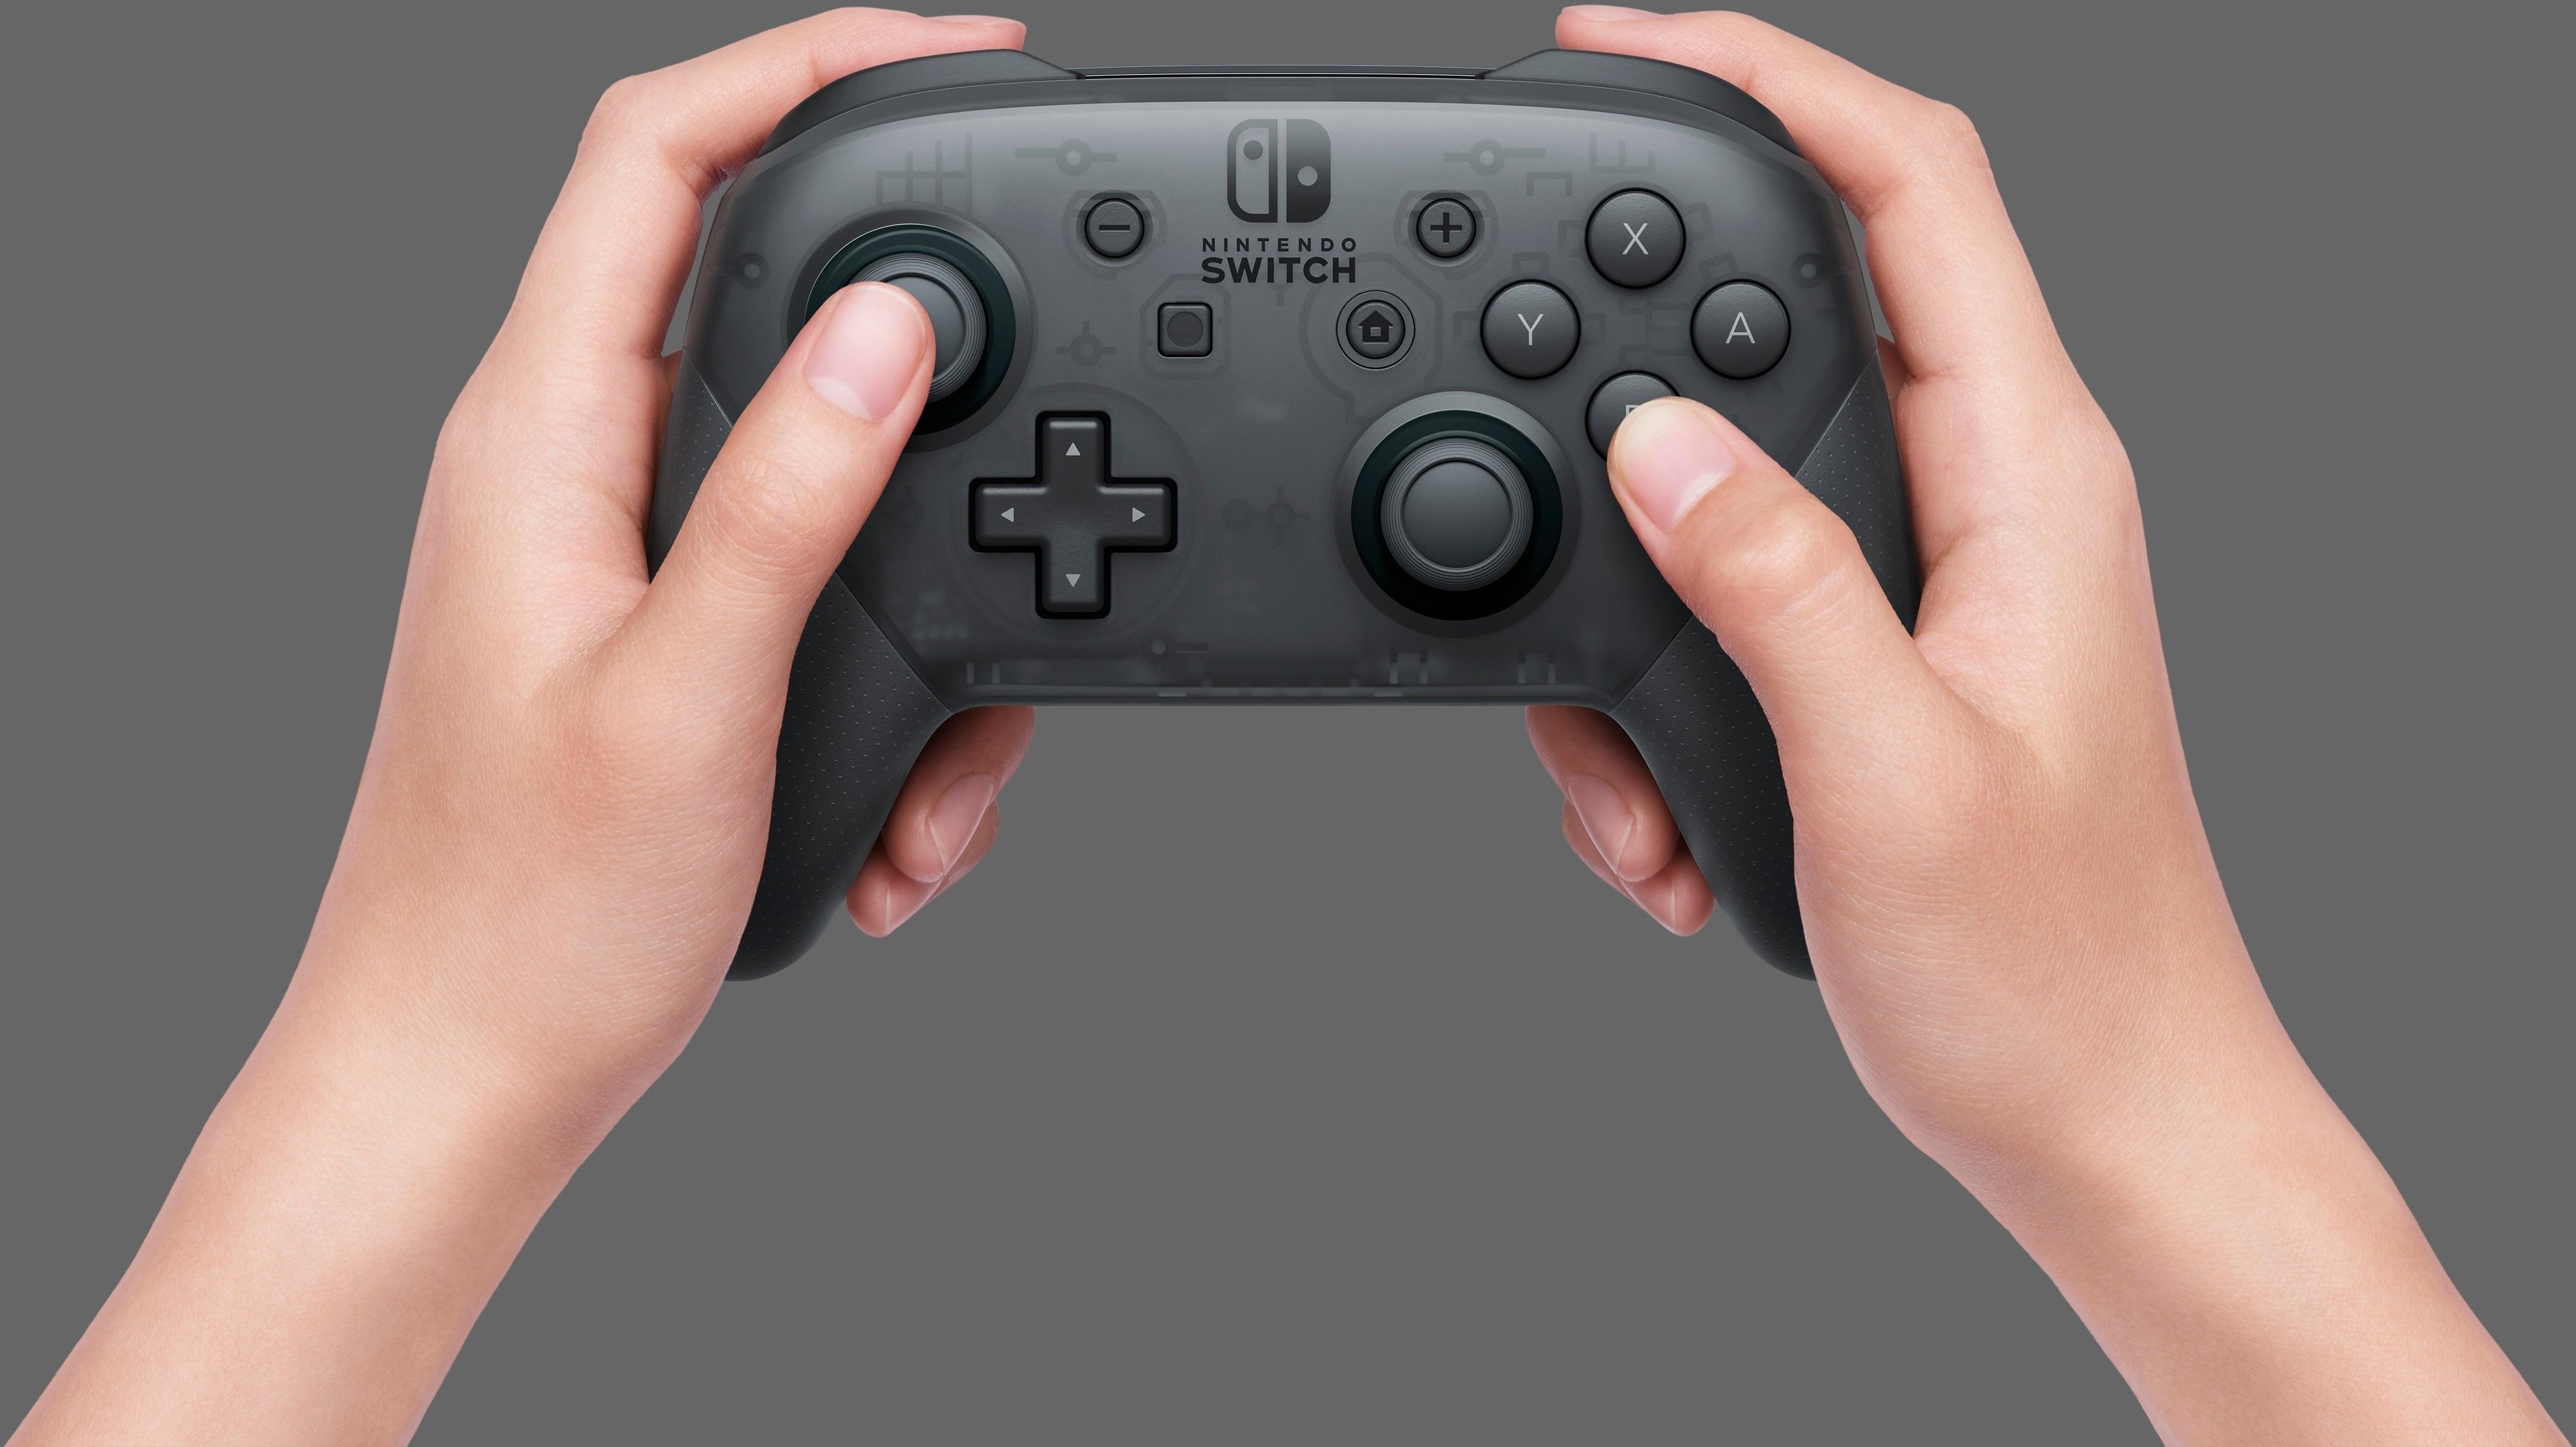 Nintendo Switch Pro Controller Splatoon 3 Edition HACAFSSKT - Best Buy